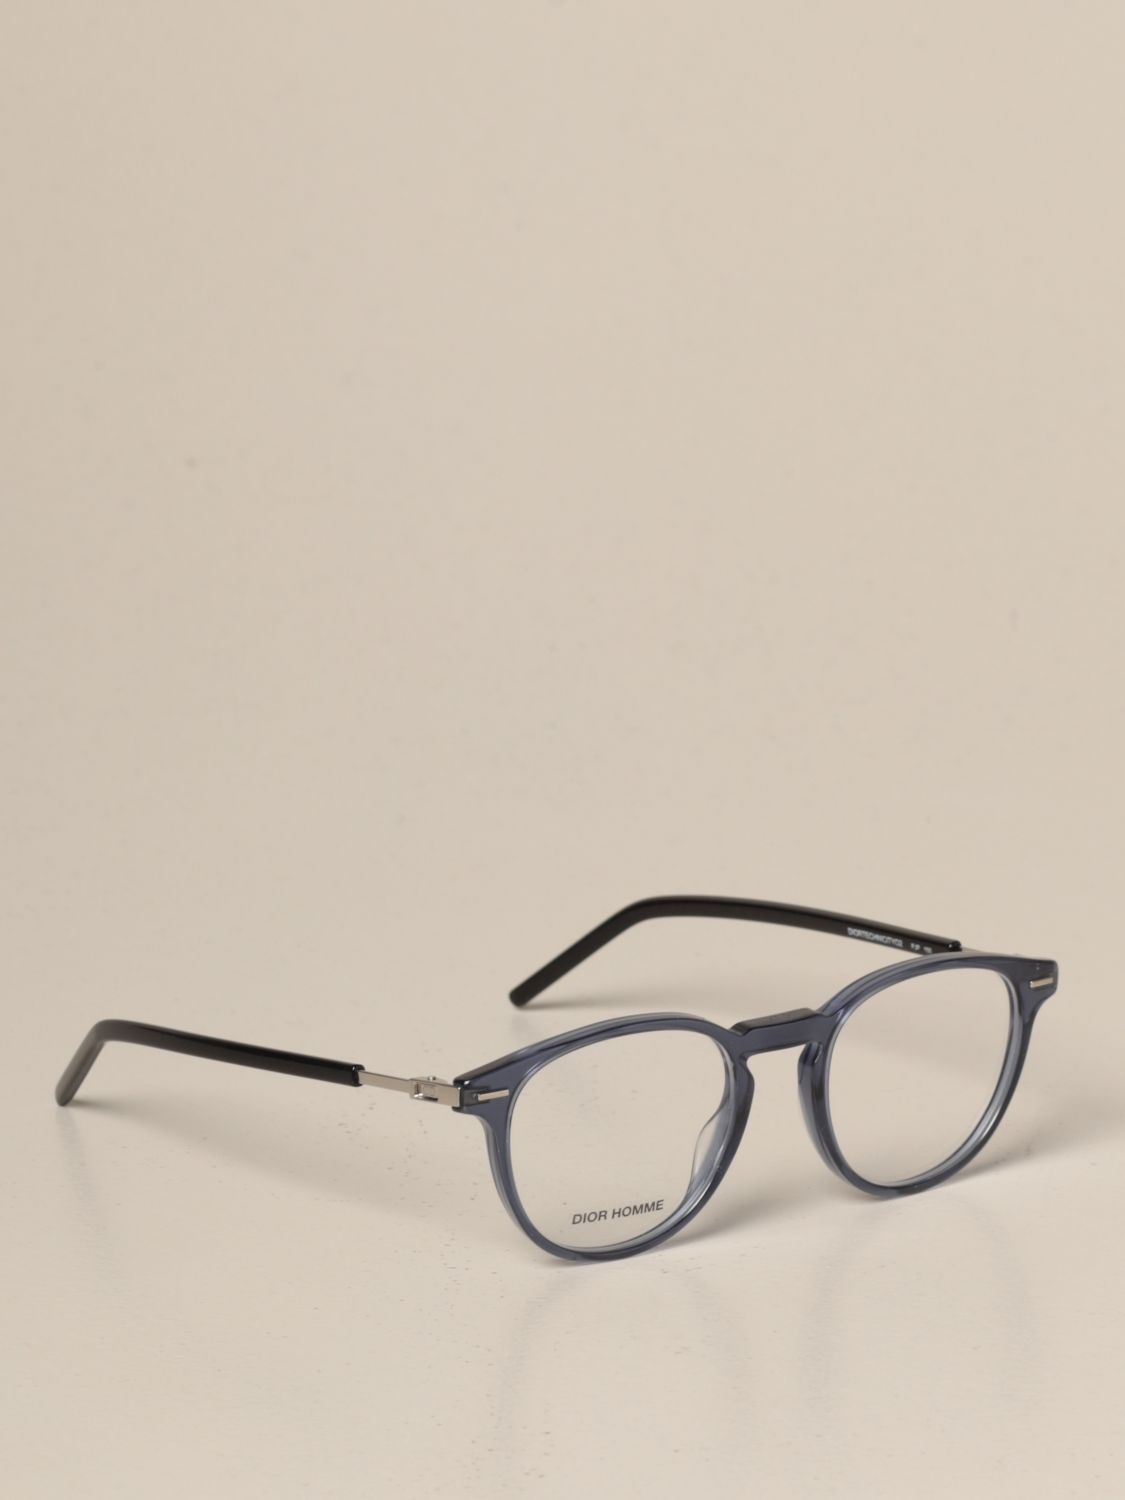 DIOR HOMME: Glasses men | Glasses Dior 